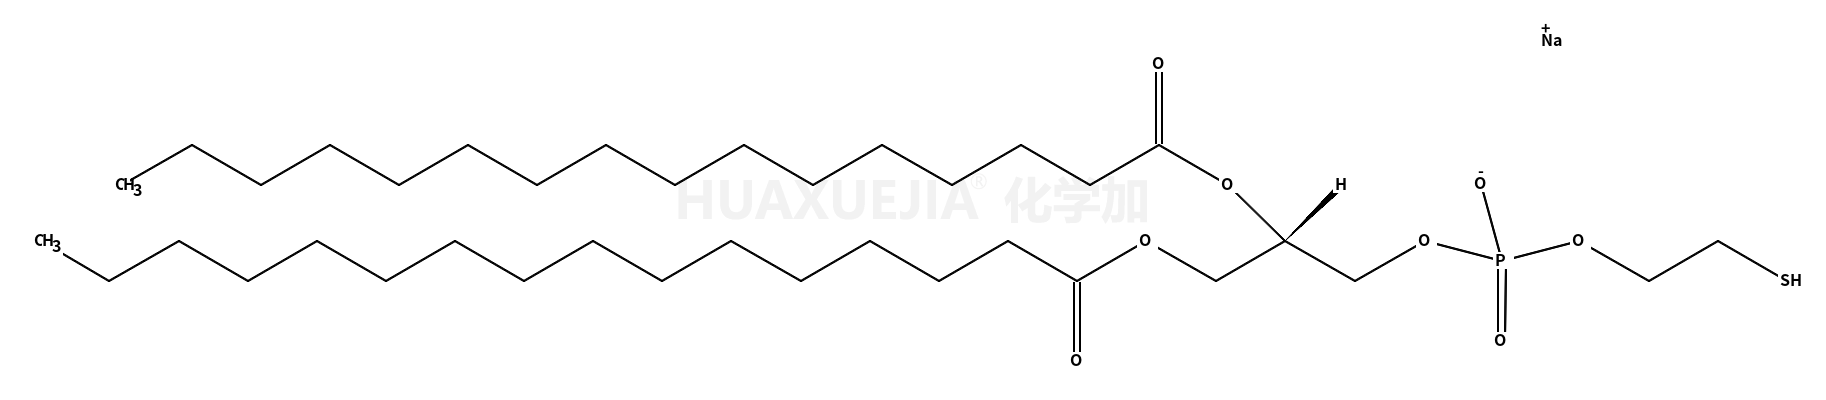 1,2-Dipalmitoyl-<i>sn</i>-Glycero-3-Phosphothioethanol (Sodium Salt)